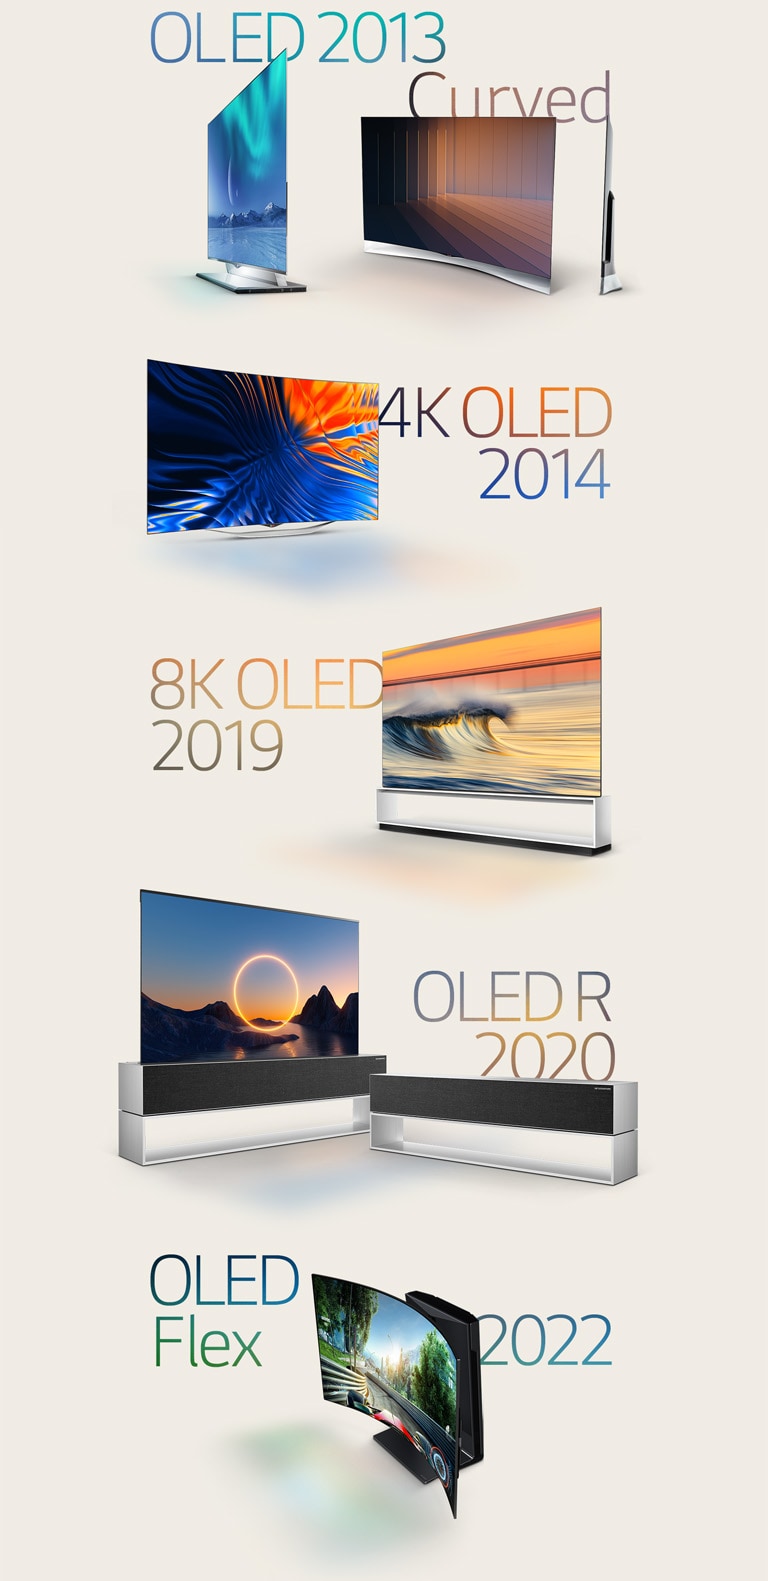 注目の LG 有機 EL の画像:2013 年の曲線型有機 EL、2014 年の 4K OLED、2019 年の 8K OLED, 2020 年の巻き取り型有機 EL、そして 2022 年の LG OLED Flex。